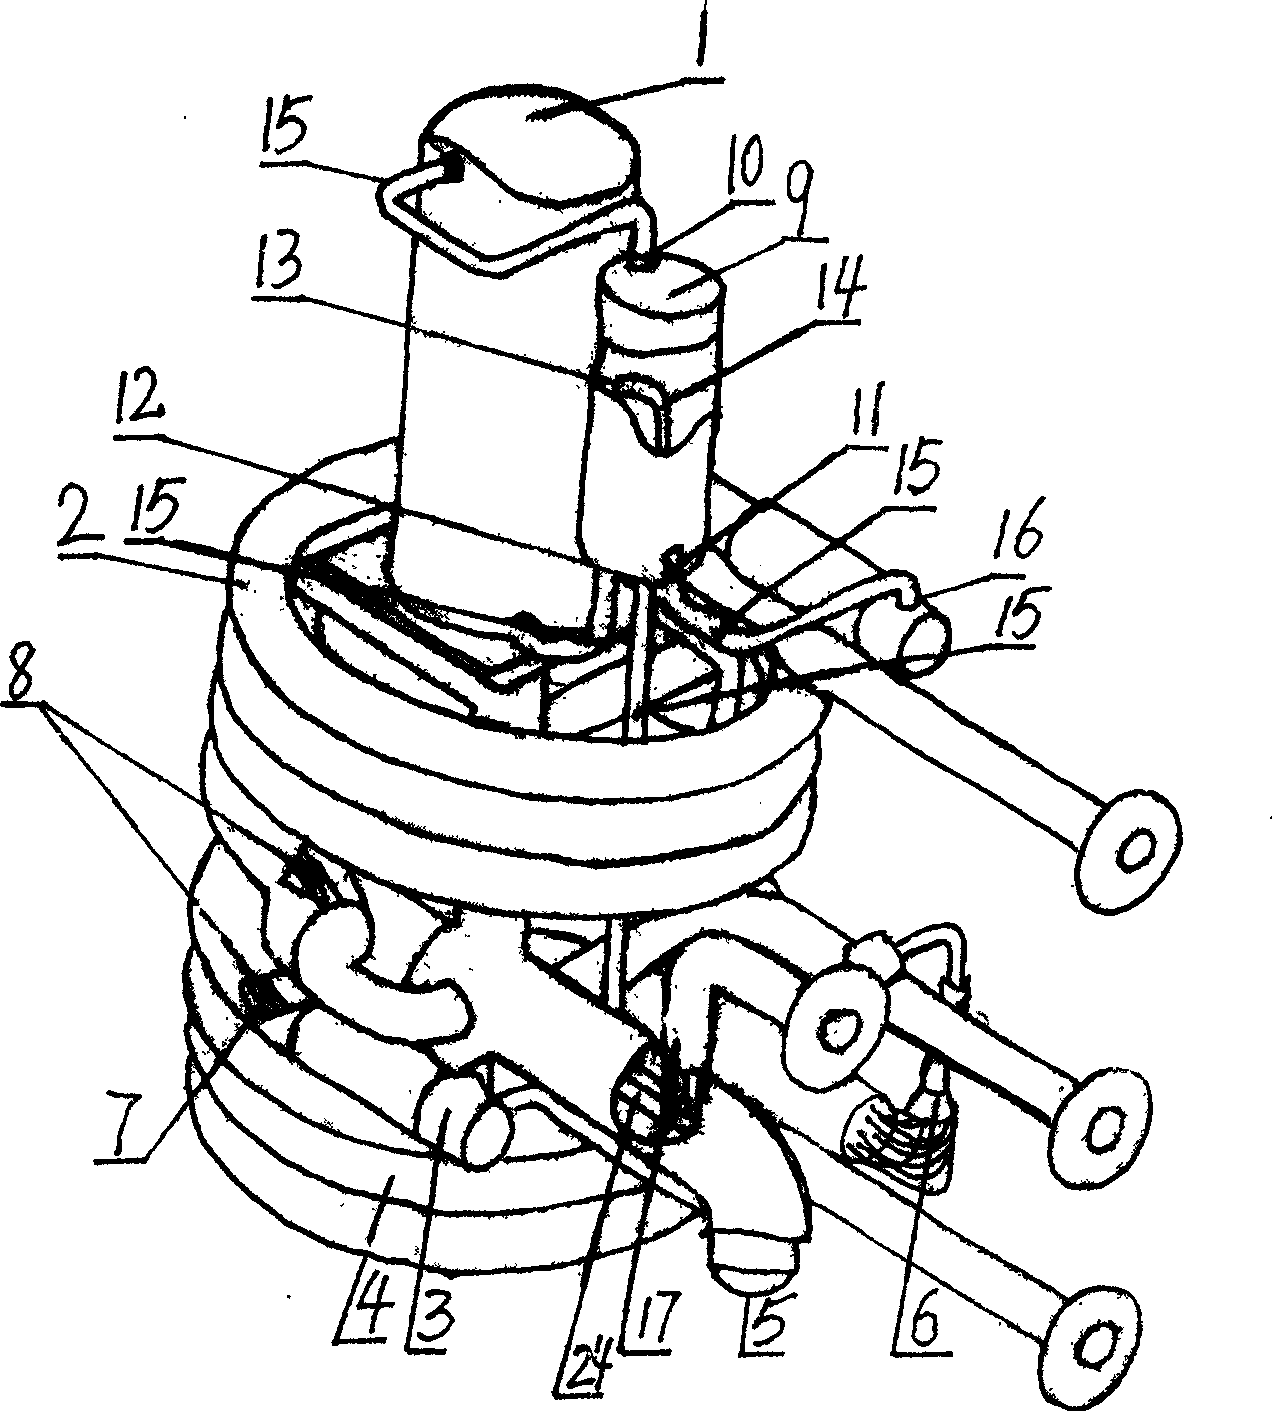 Flexible fluid-directing double-spiral-sleeve type heat exchanger